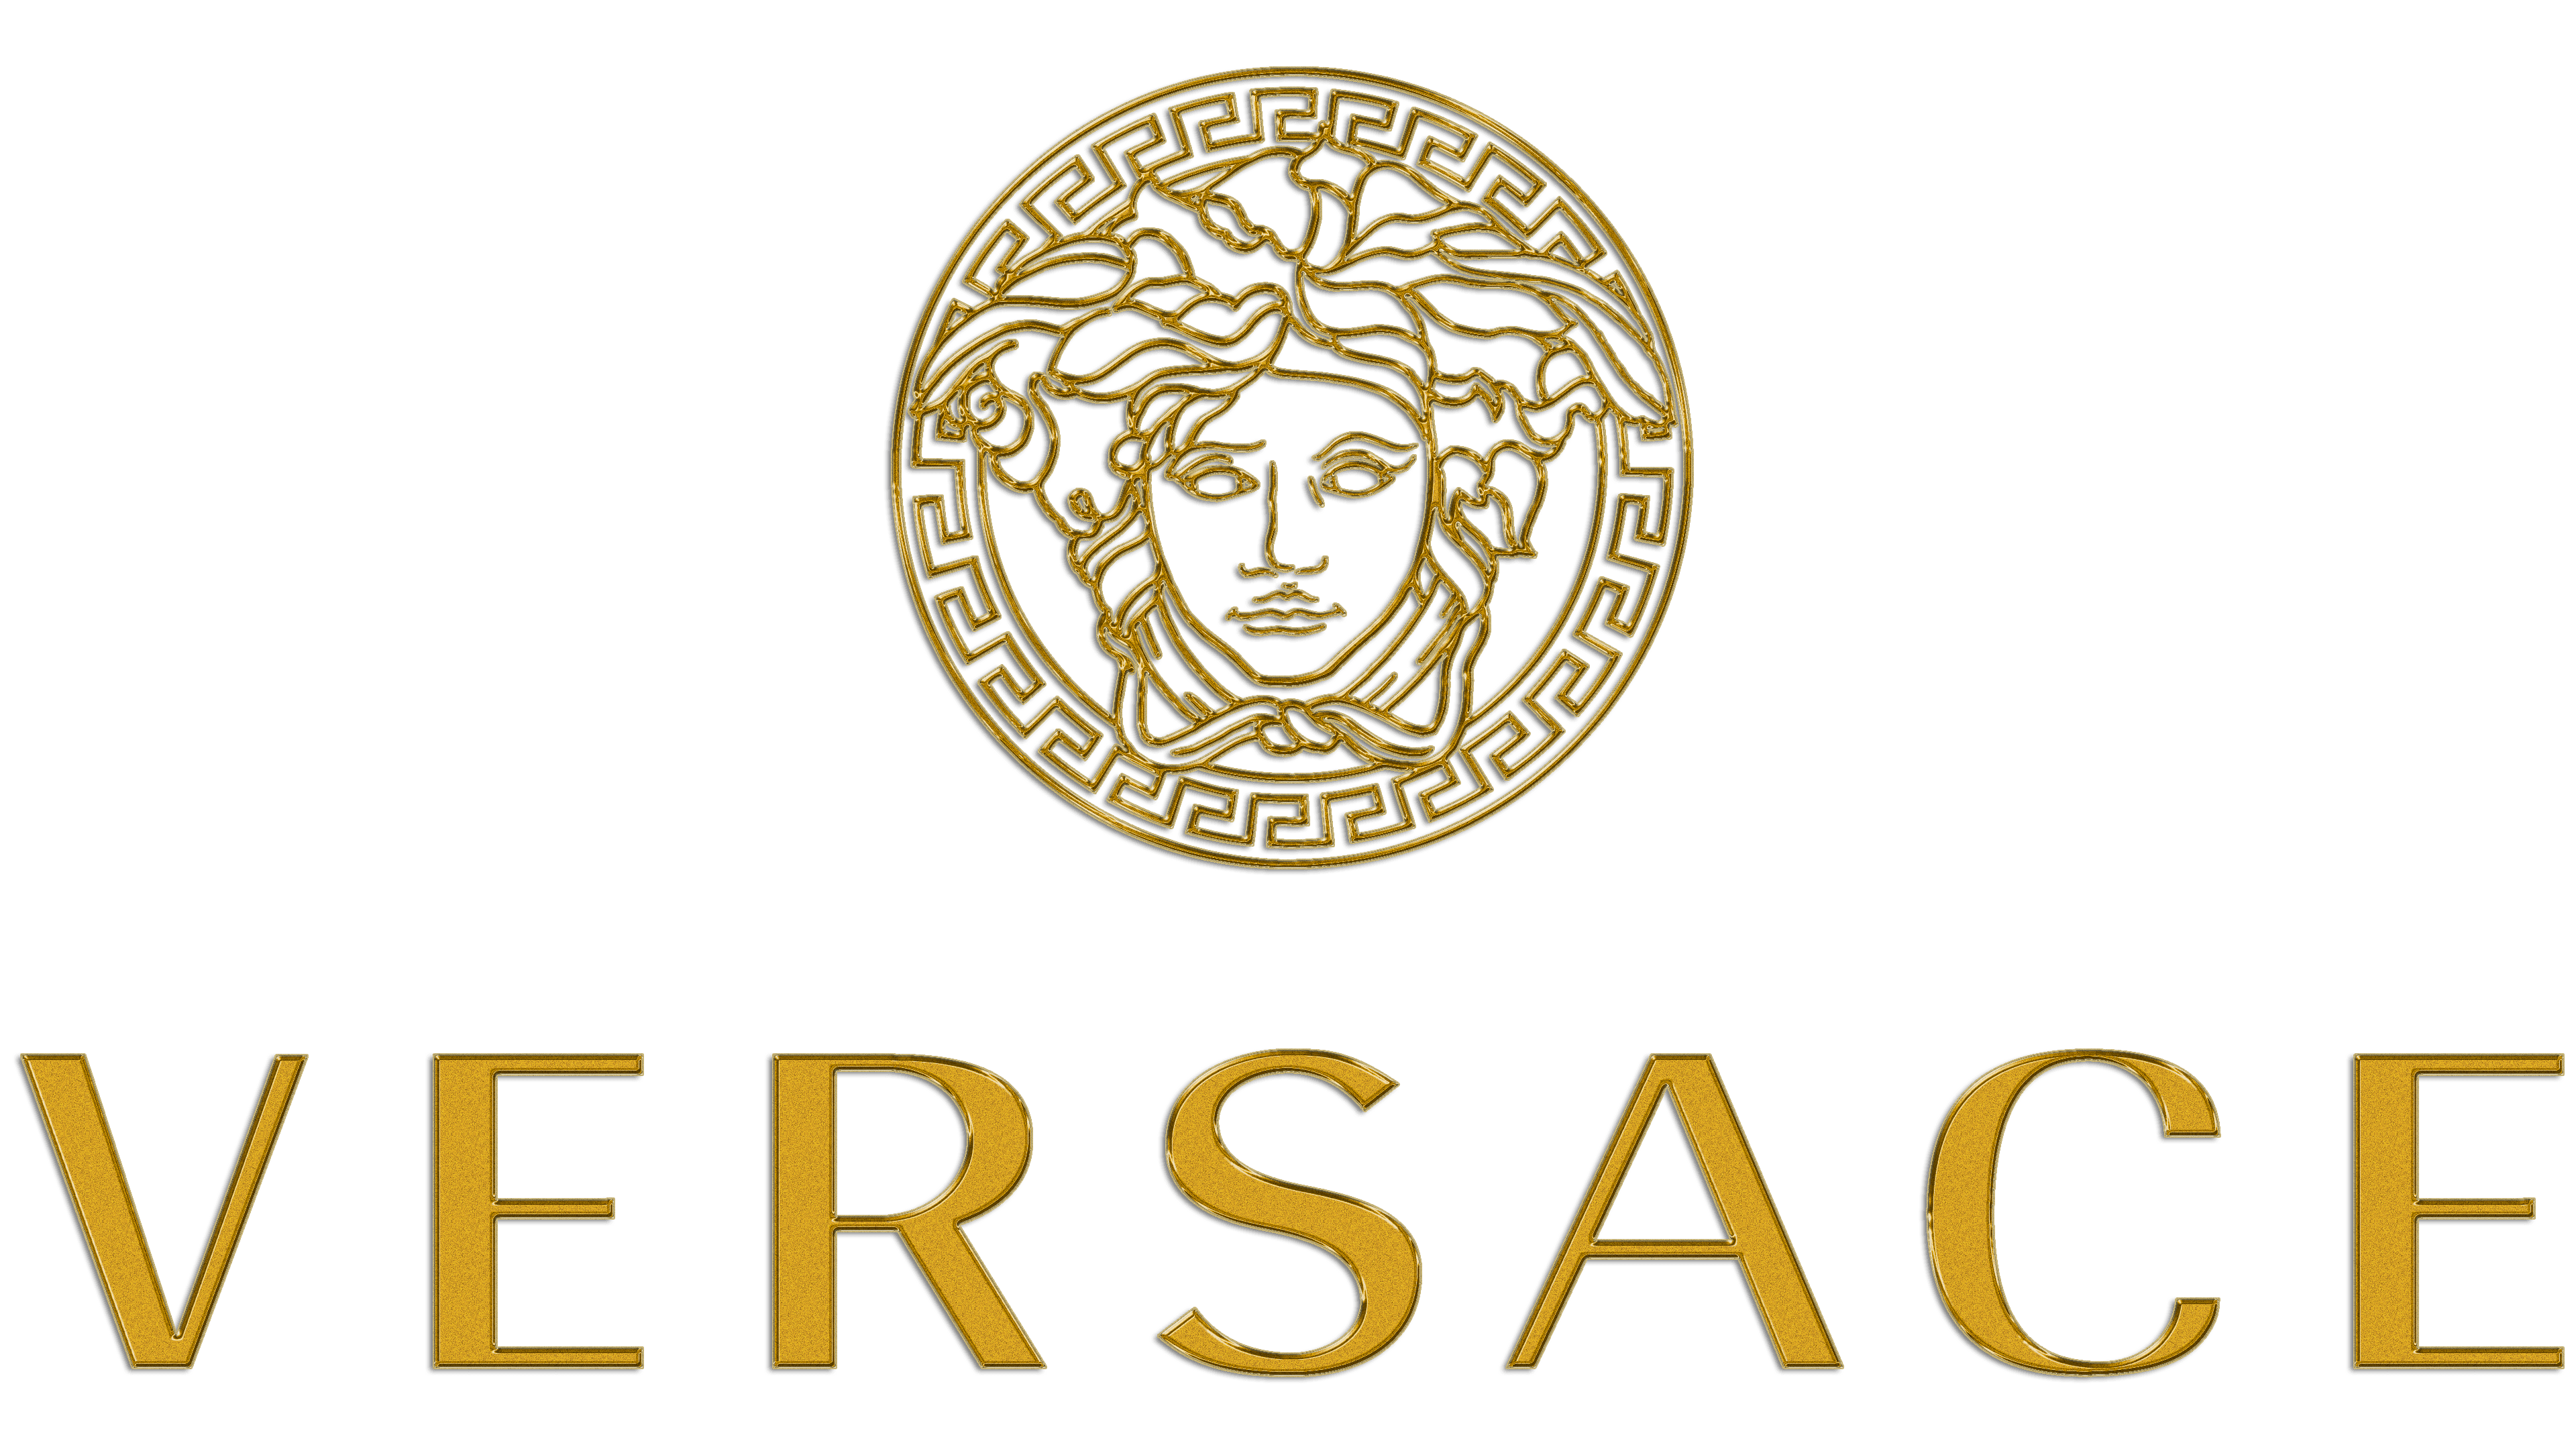 Versace Logo Medusa PNG | Vector - FREE Vector Design - Cdr, Ai, EPS ...